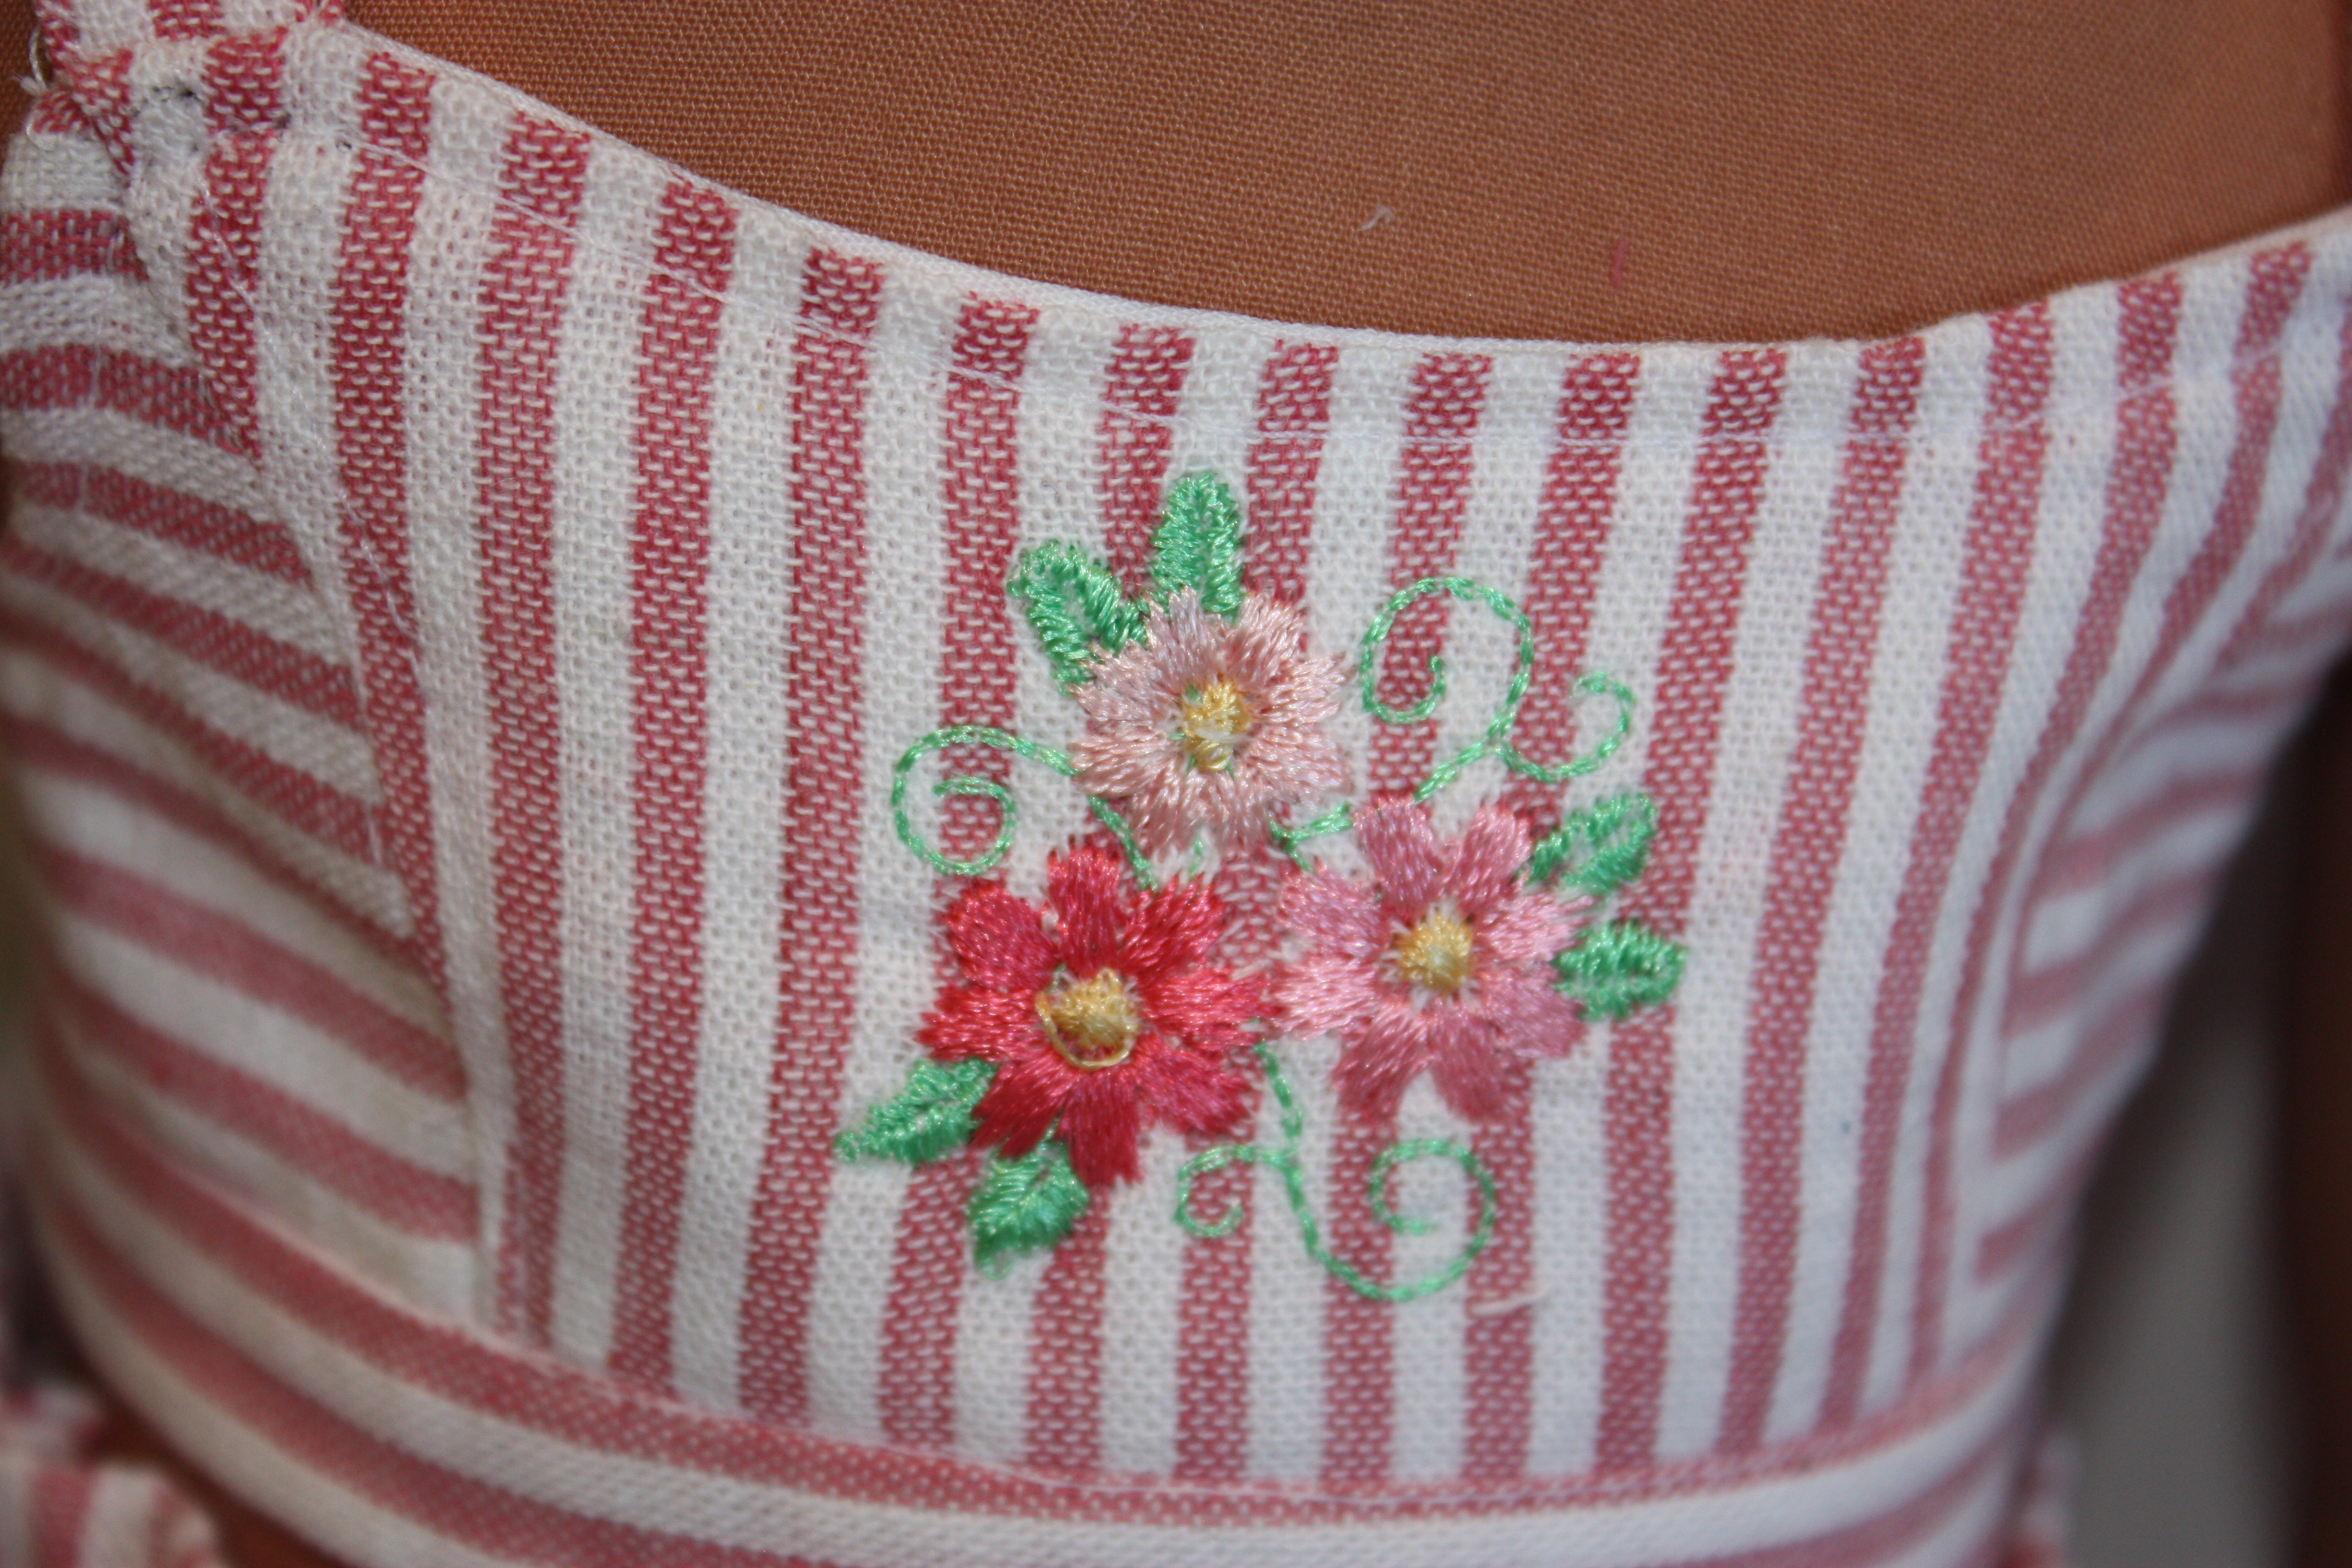 Machine Embroidery Patterns Free Genniewren Designs Free Three Flowers Machine Embroidery Design For